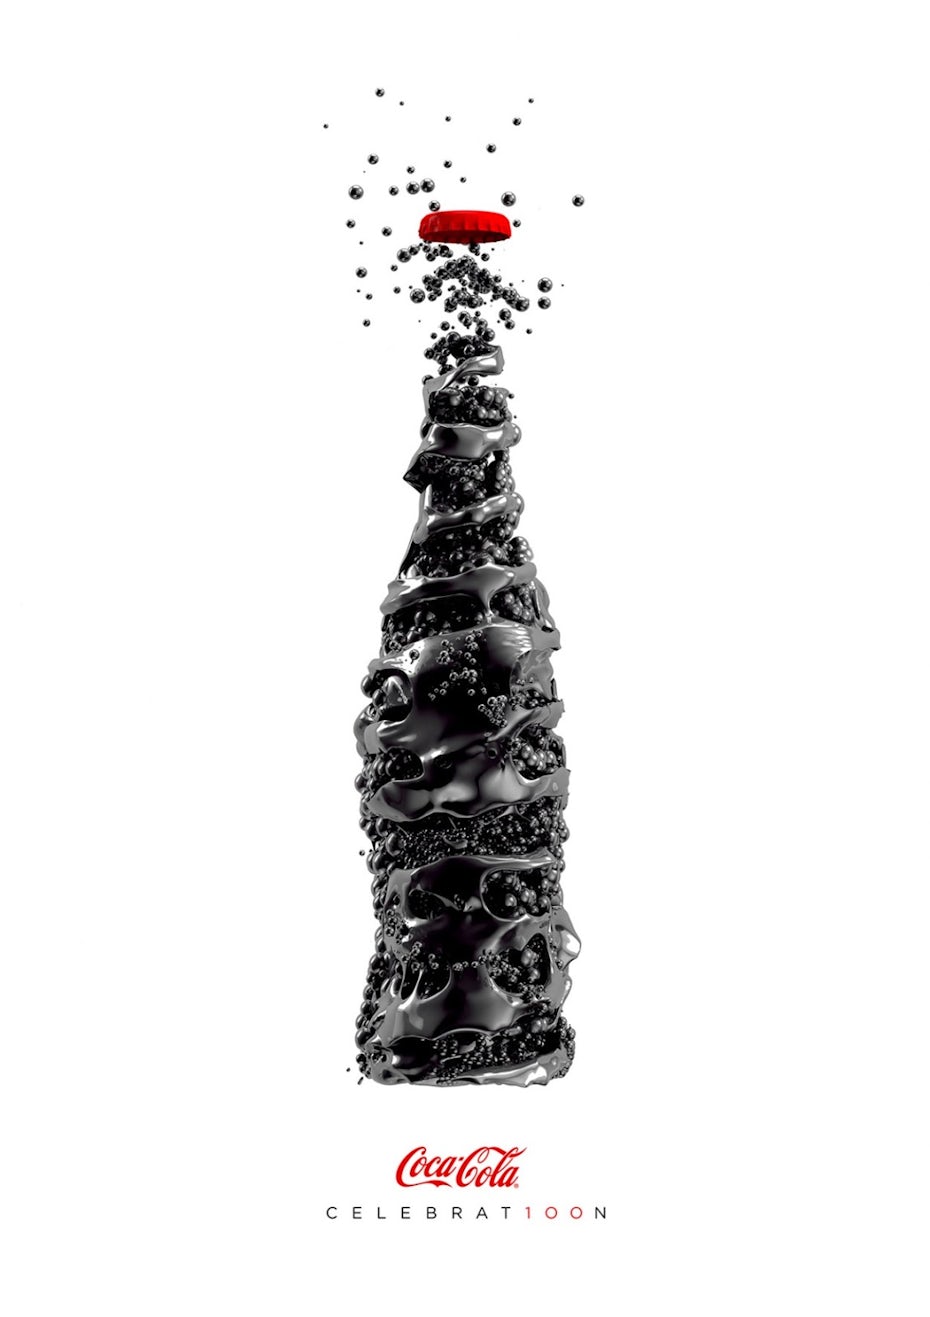 La opinión de Bolder Creative sobre la campaña de Coca-Cola